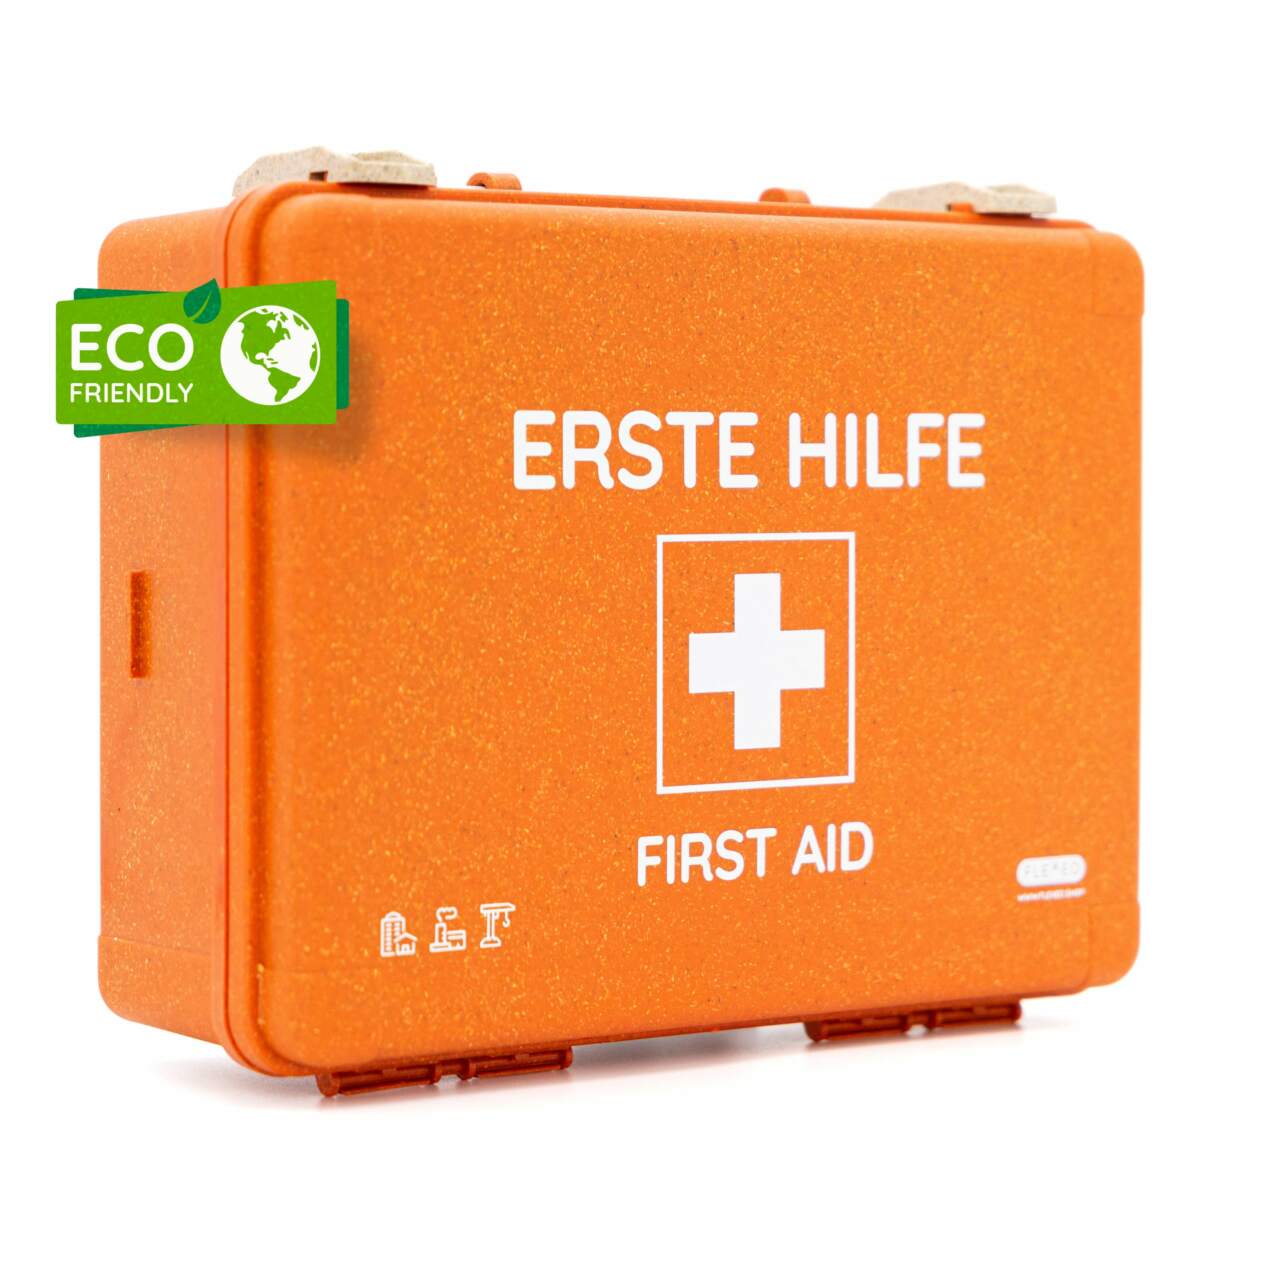 Erste Hilfe Koffer Hartmann DIN 13157-C klein